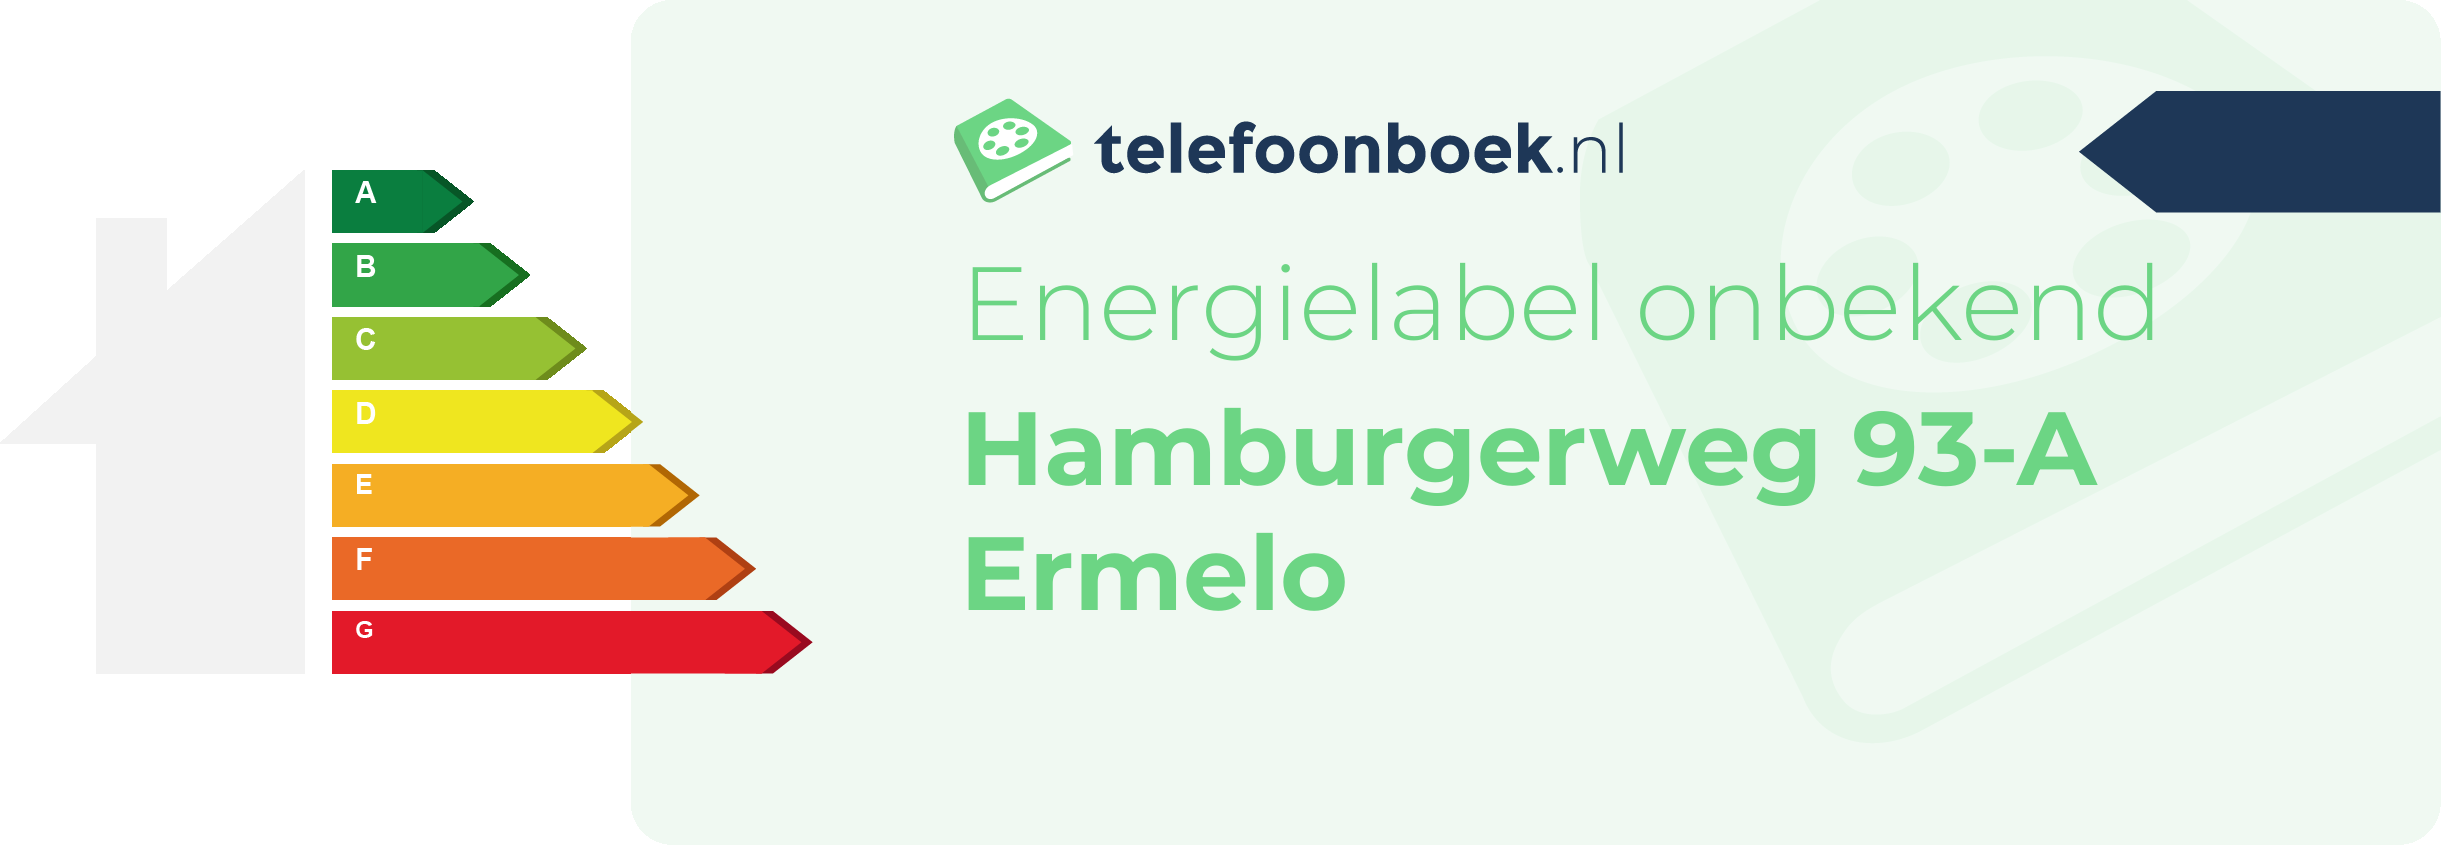 Energielabel Hamburgerweg 93-A Ermelo